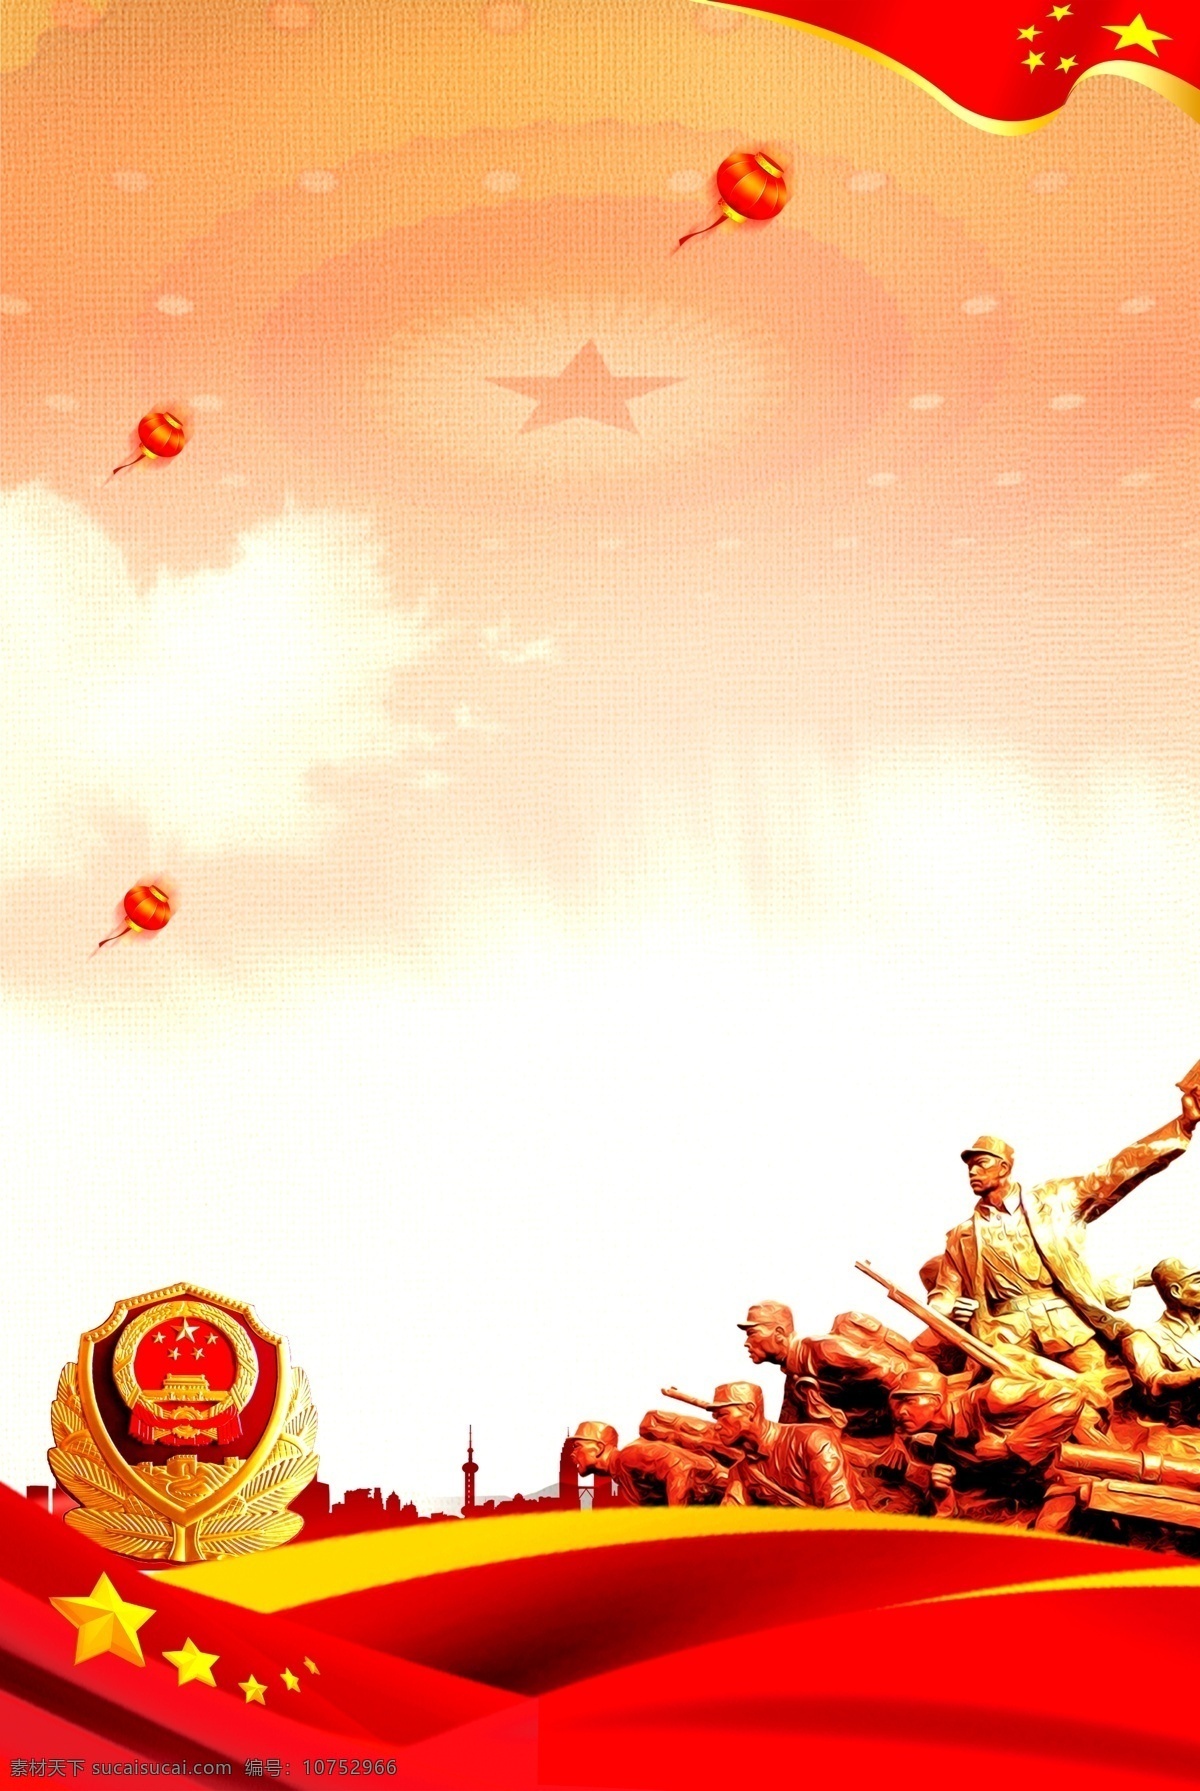 抗日战争 胜利 周年 海报 抗日 战争 73周年 中国红 革命 胜利纪念 红旗 星星 国徽 革命战士 灯笼